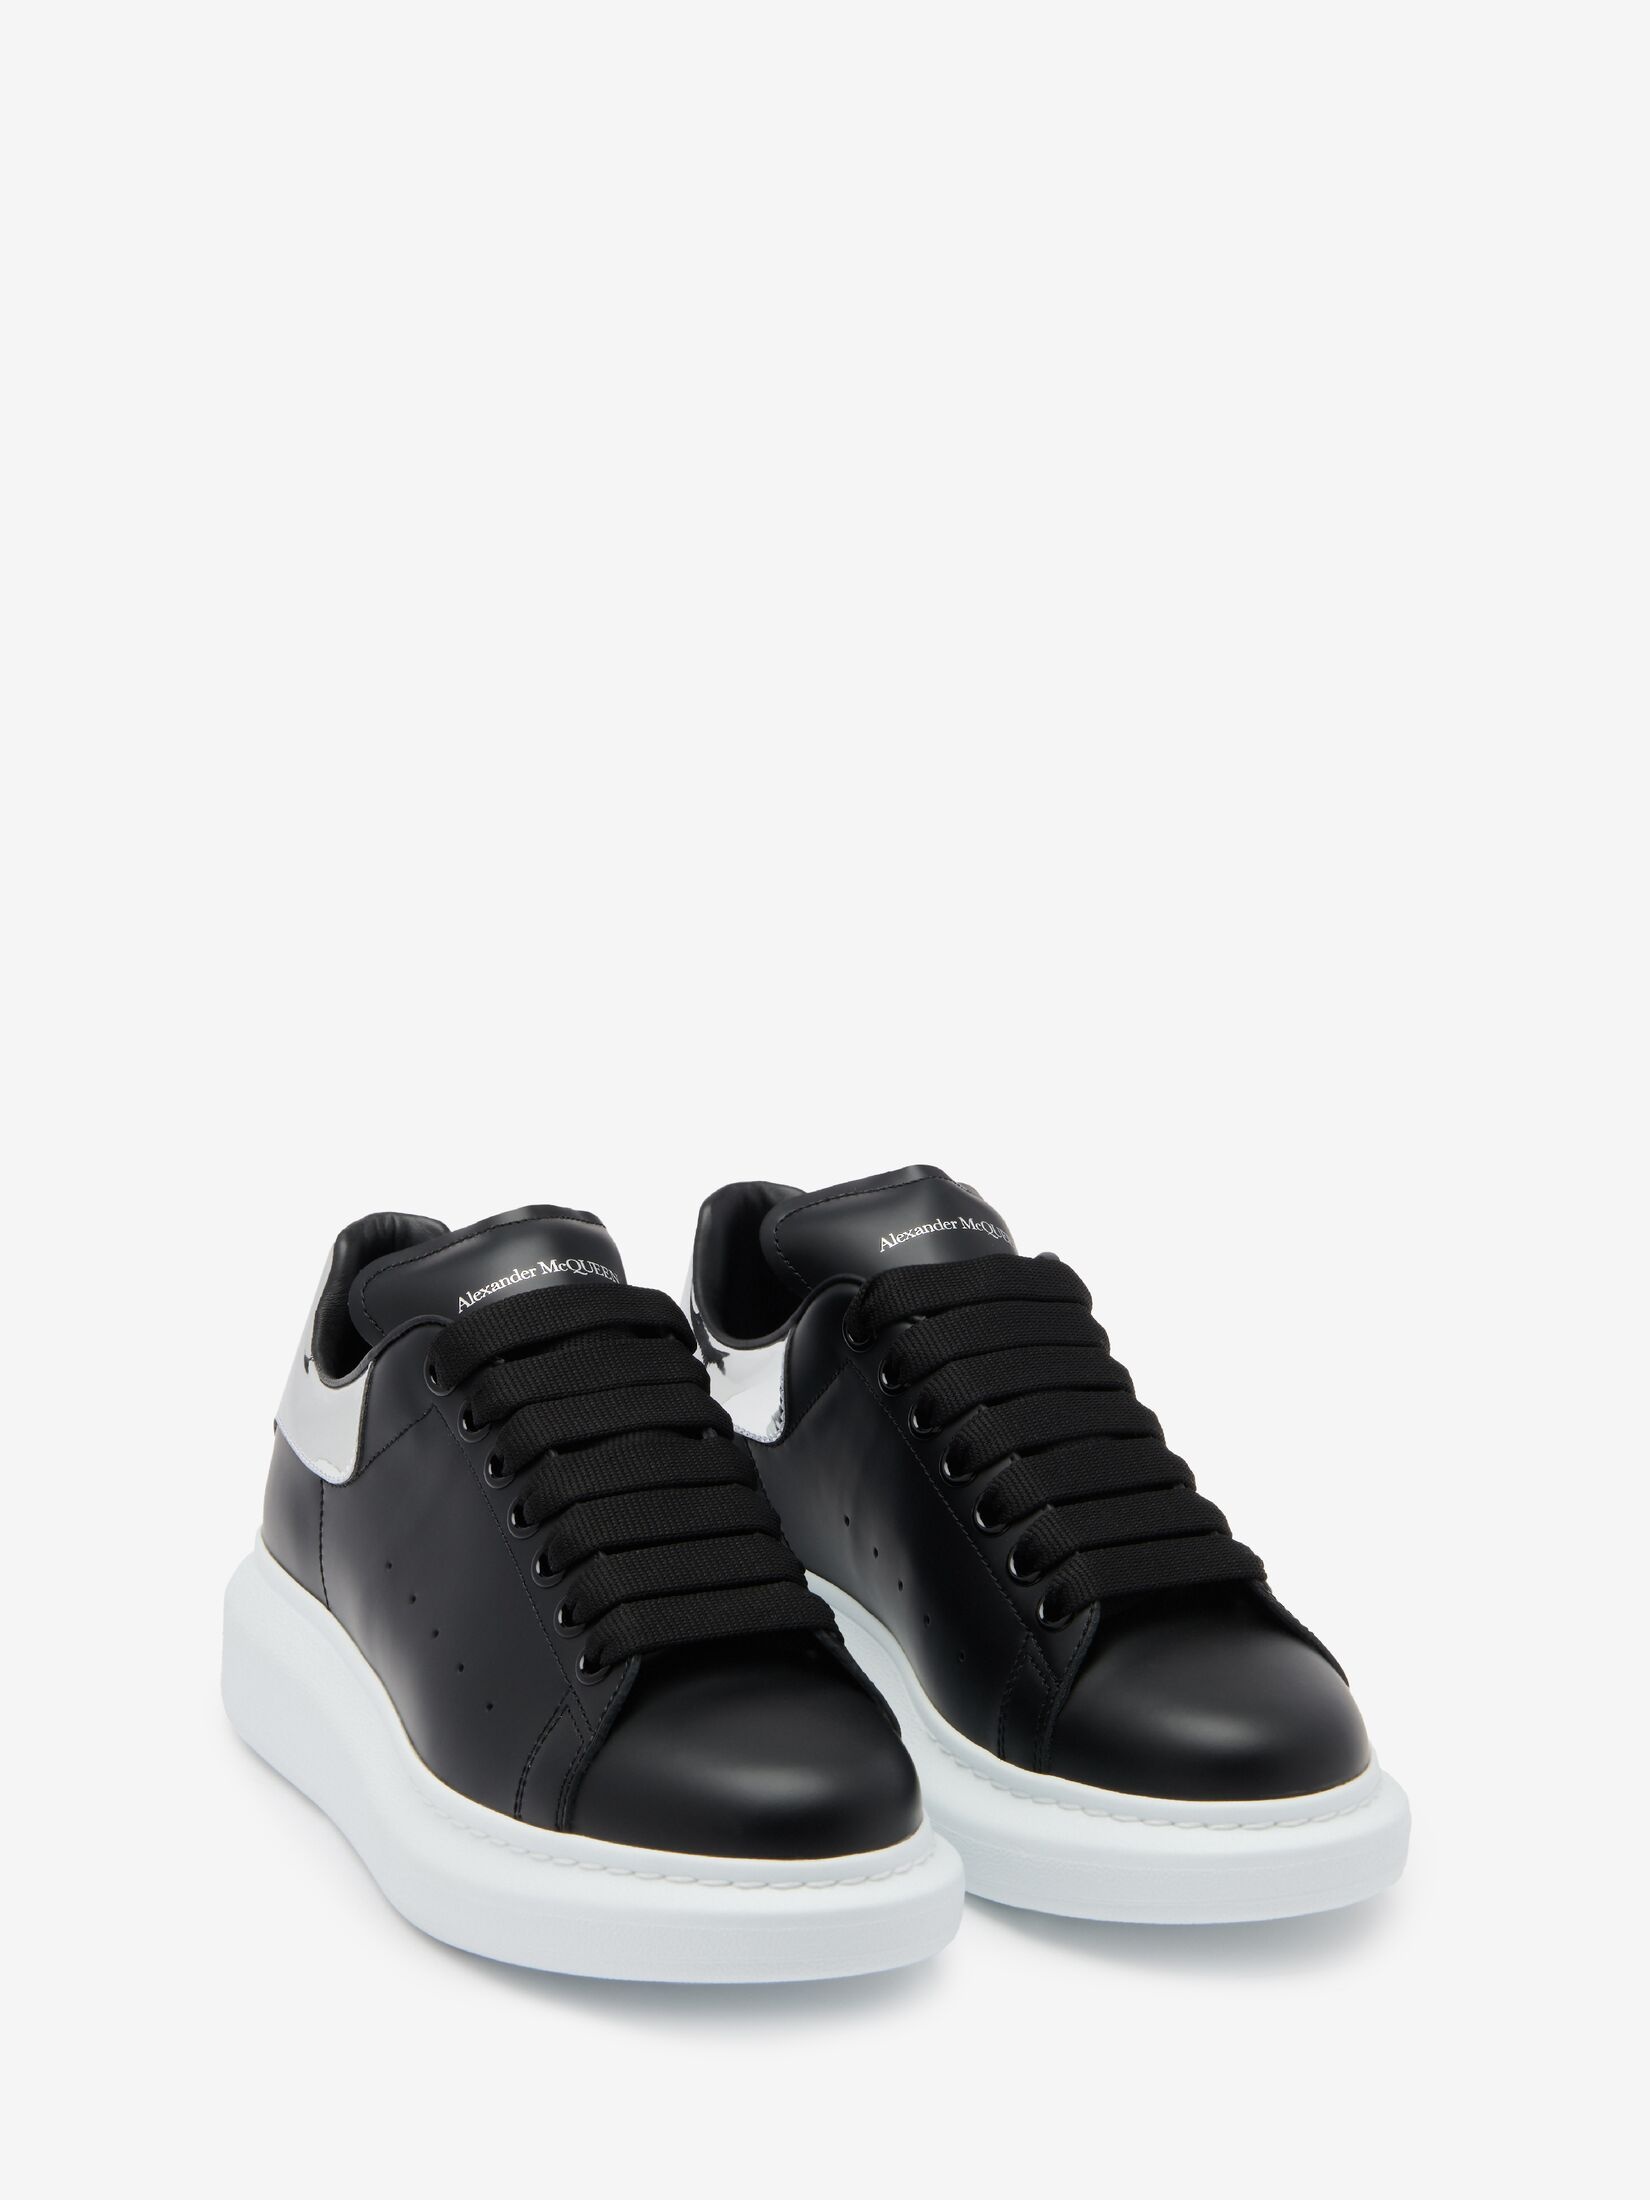 Women's Oversized Sneaker in Black/silver - 2